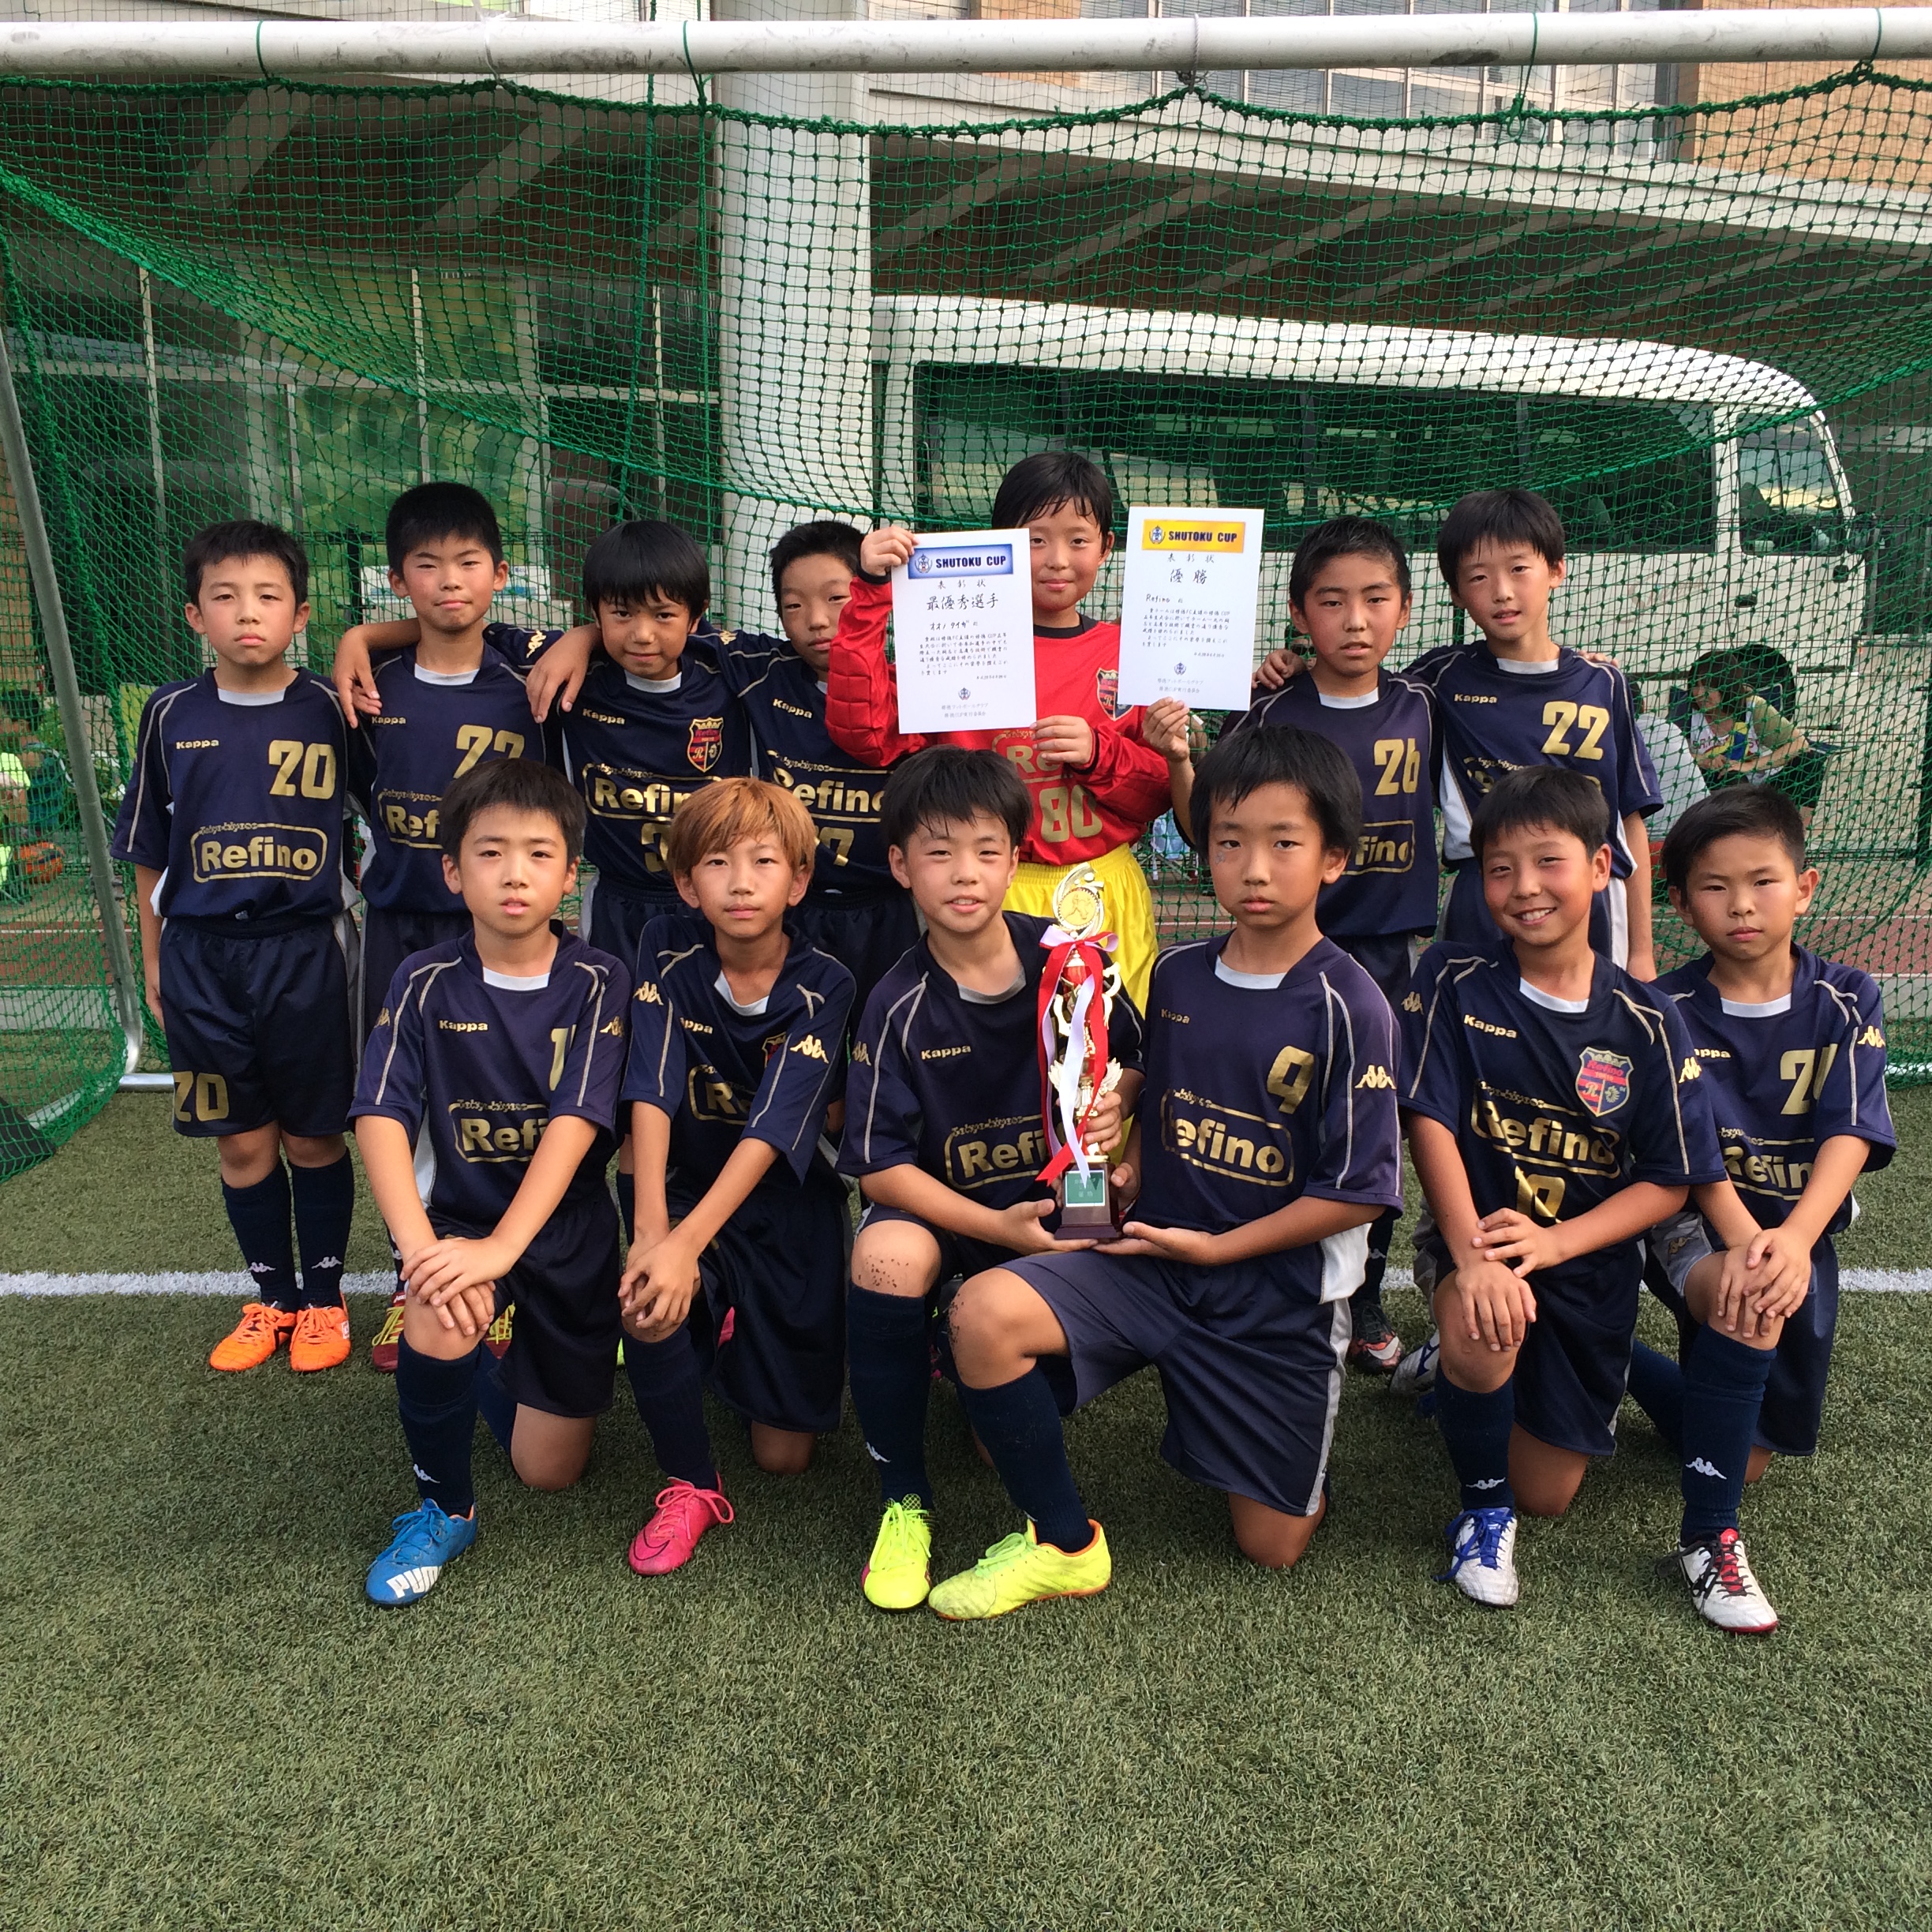 修徳fc ジュニア選手コース 幼児 小学生のサッカースクール 16 6月